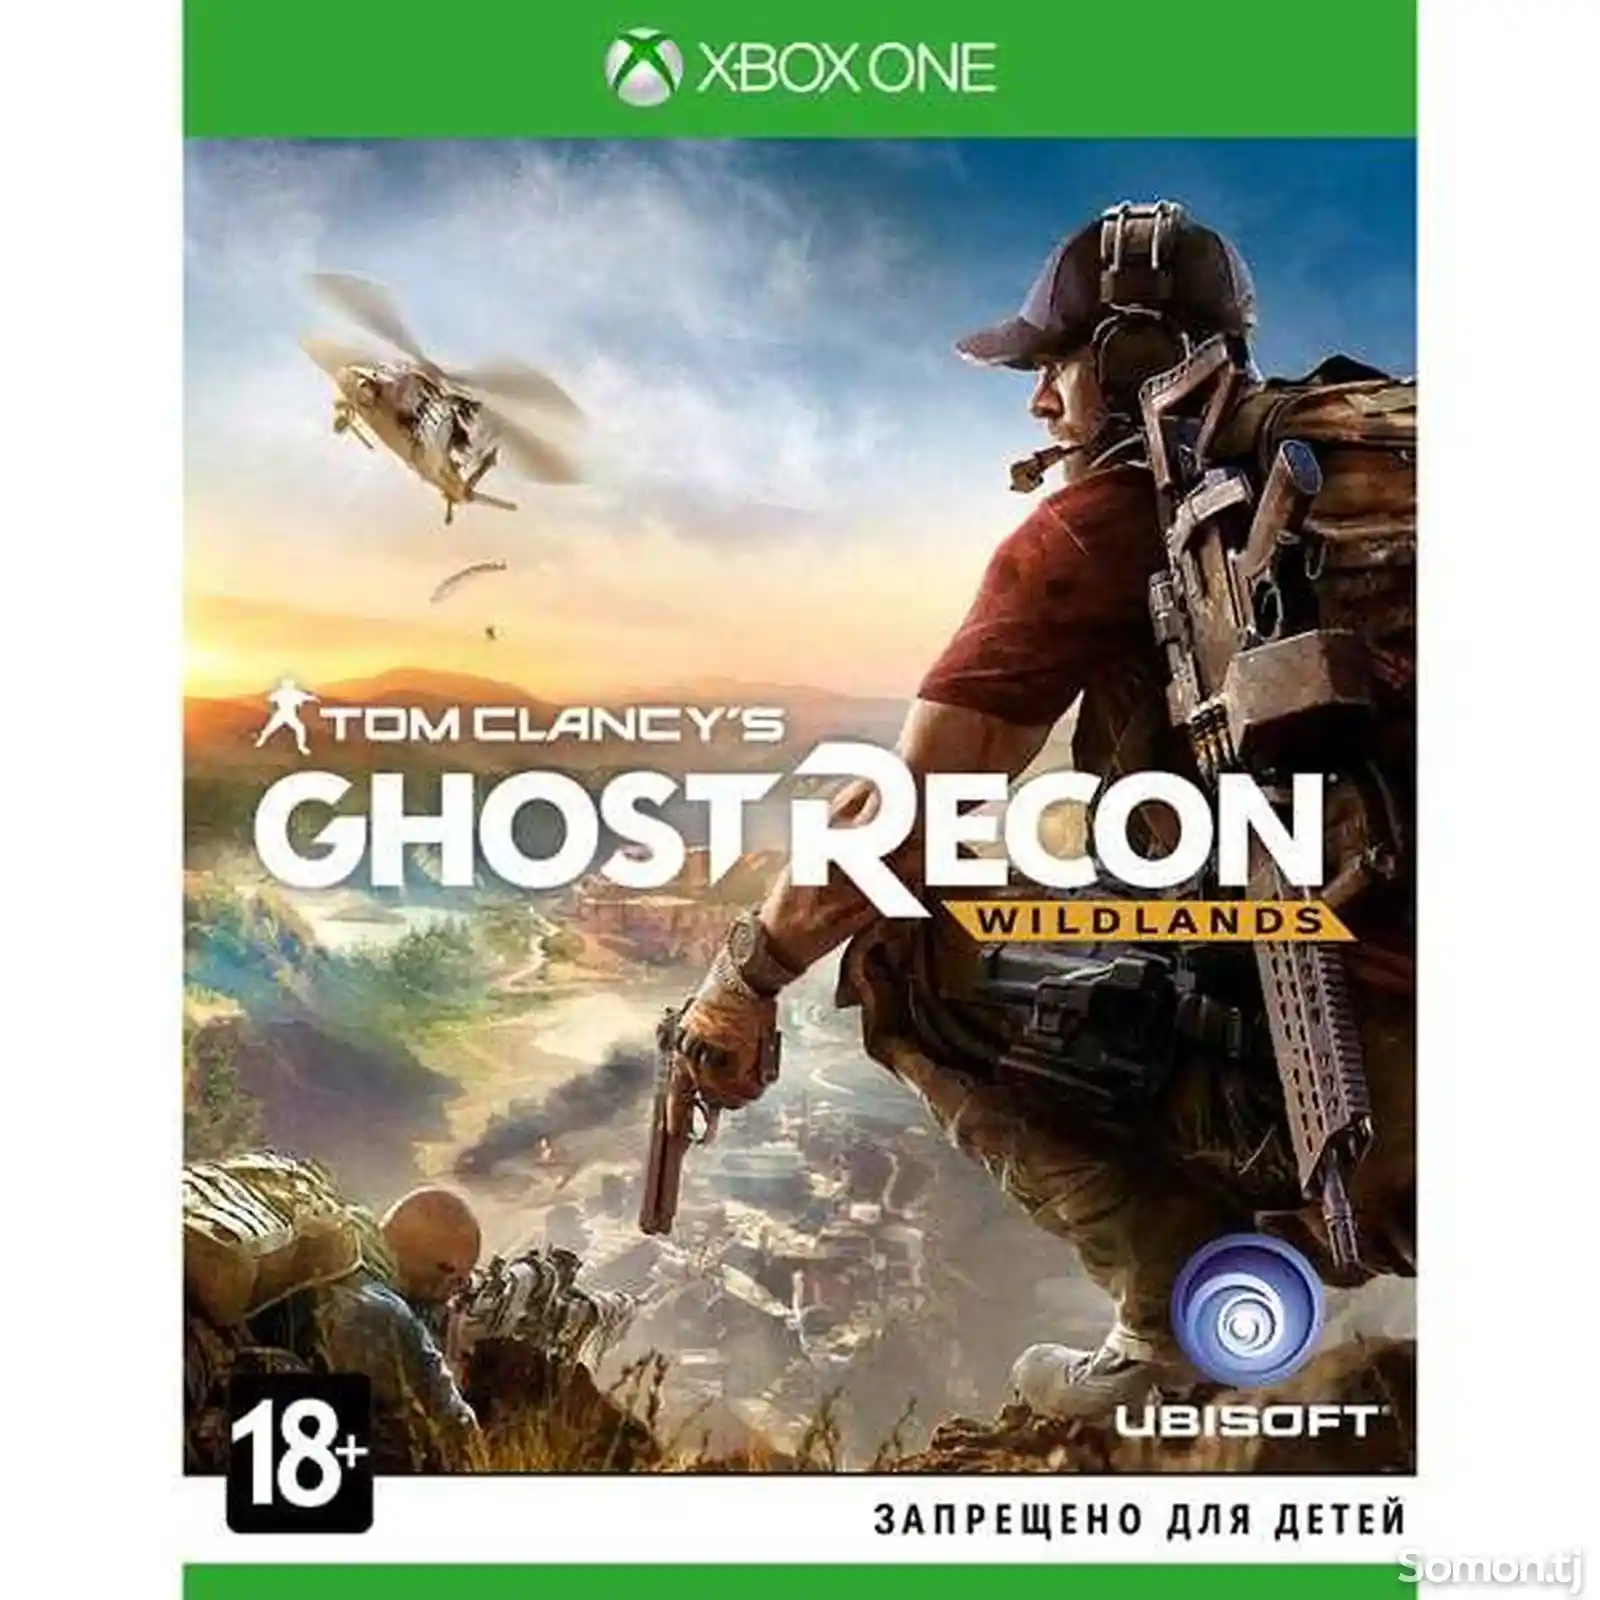 Xbox One игра Ubisoft Tom Clancy's Ghost Recon Wildlands